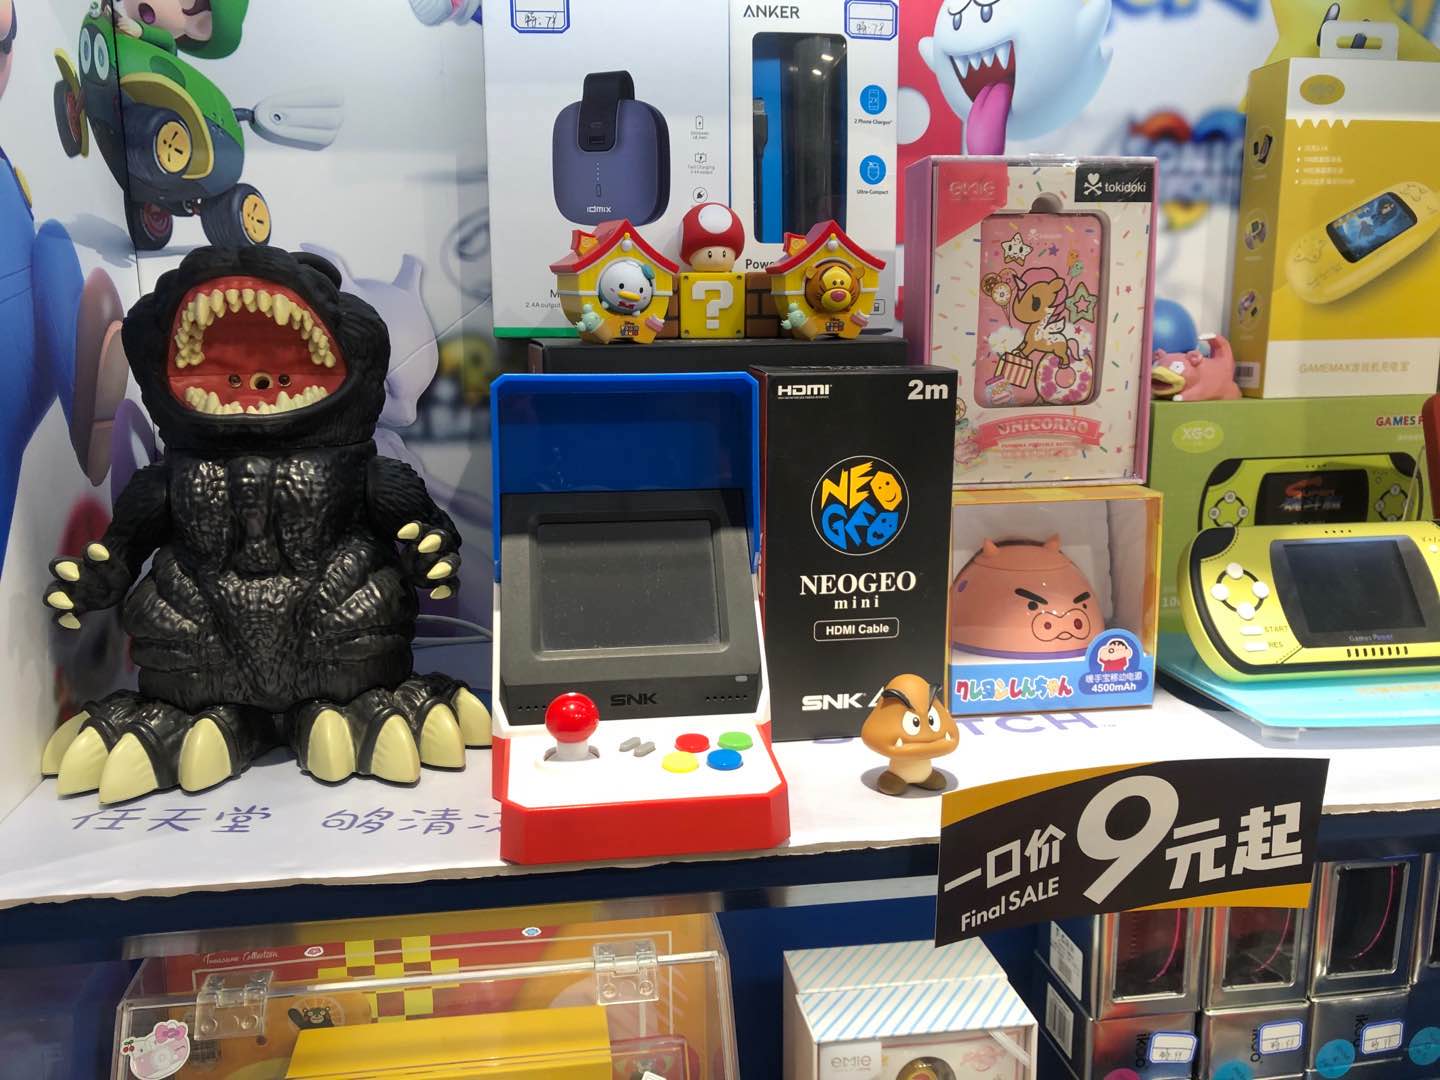 鲨鱼游戏鲨鱼游戏_鲨鱼机单机游戏_大鲨鱼游戏机价格